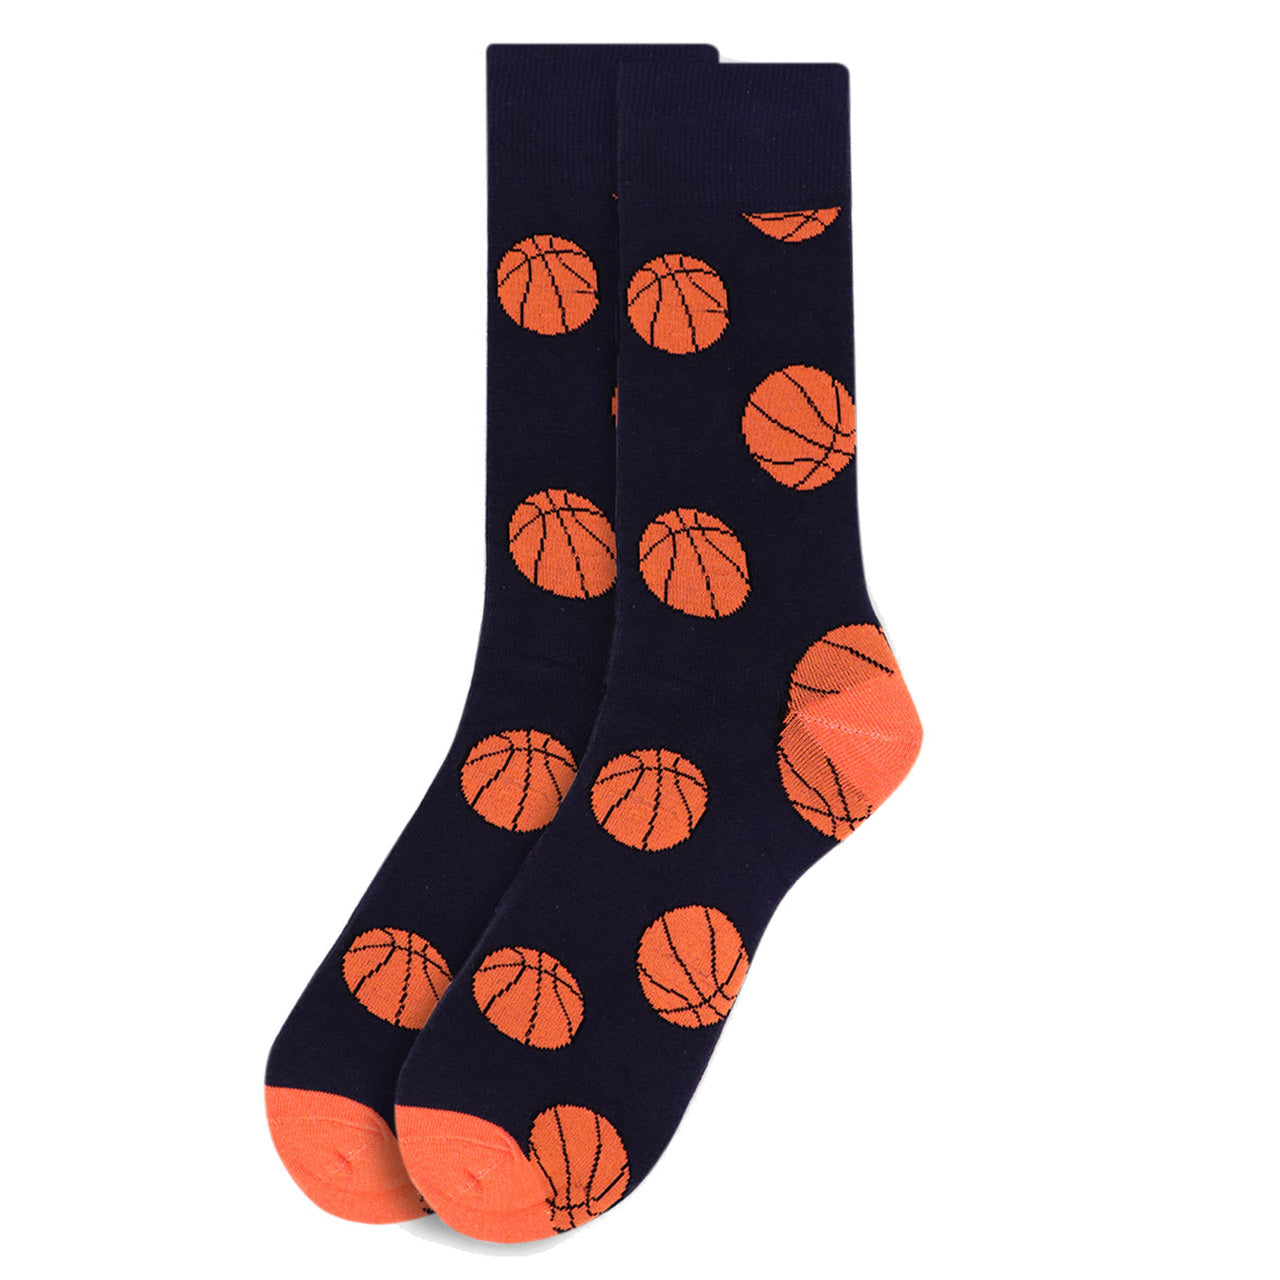 Men's Basketball Crew Socks - Black